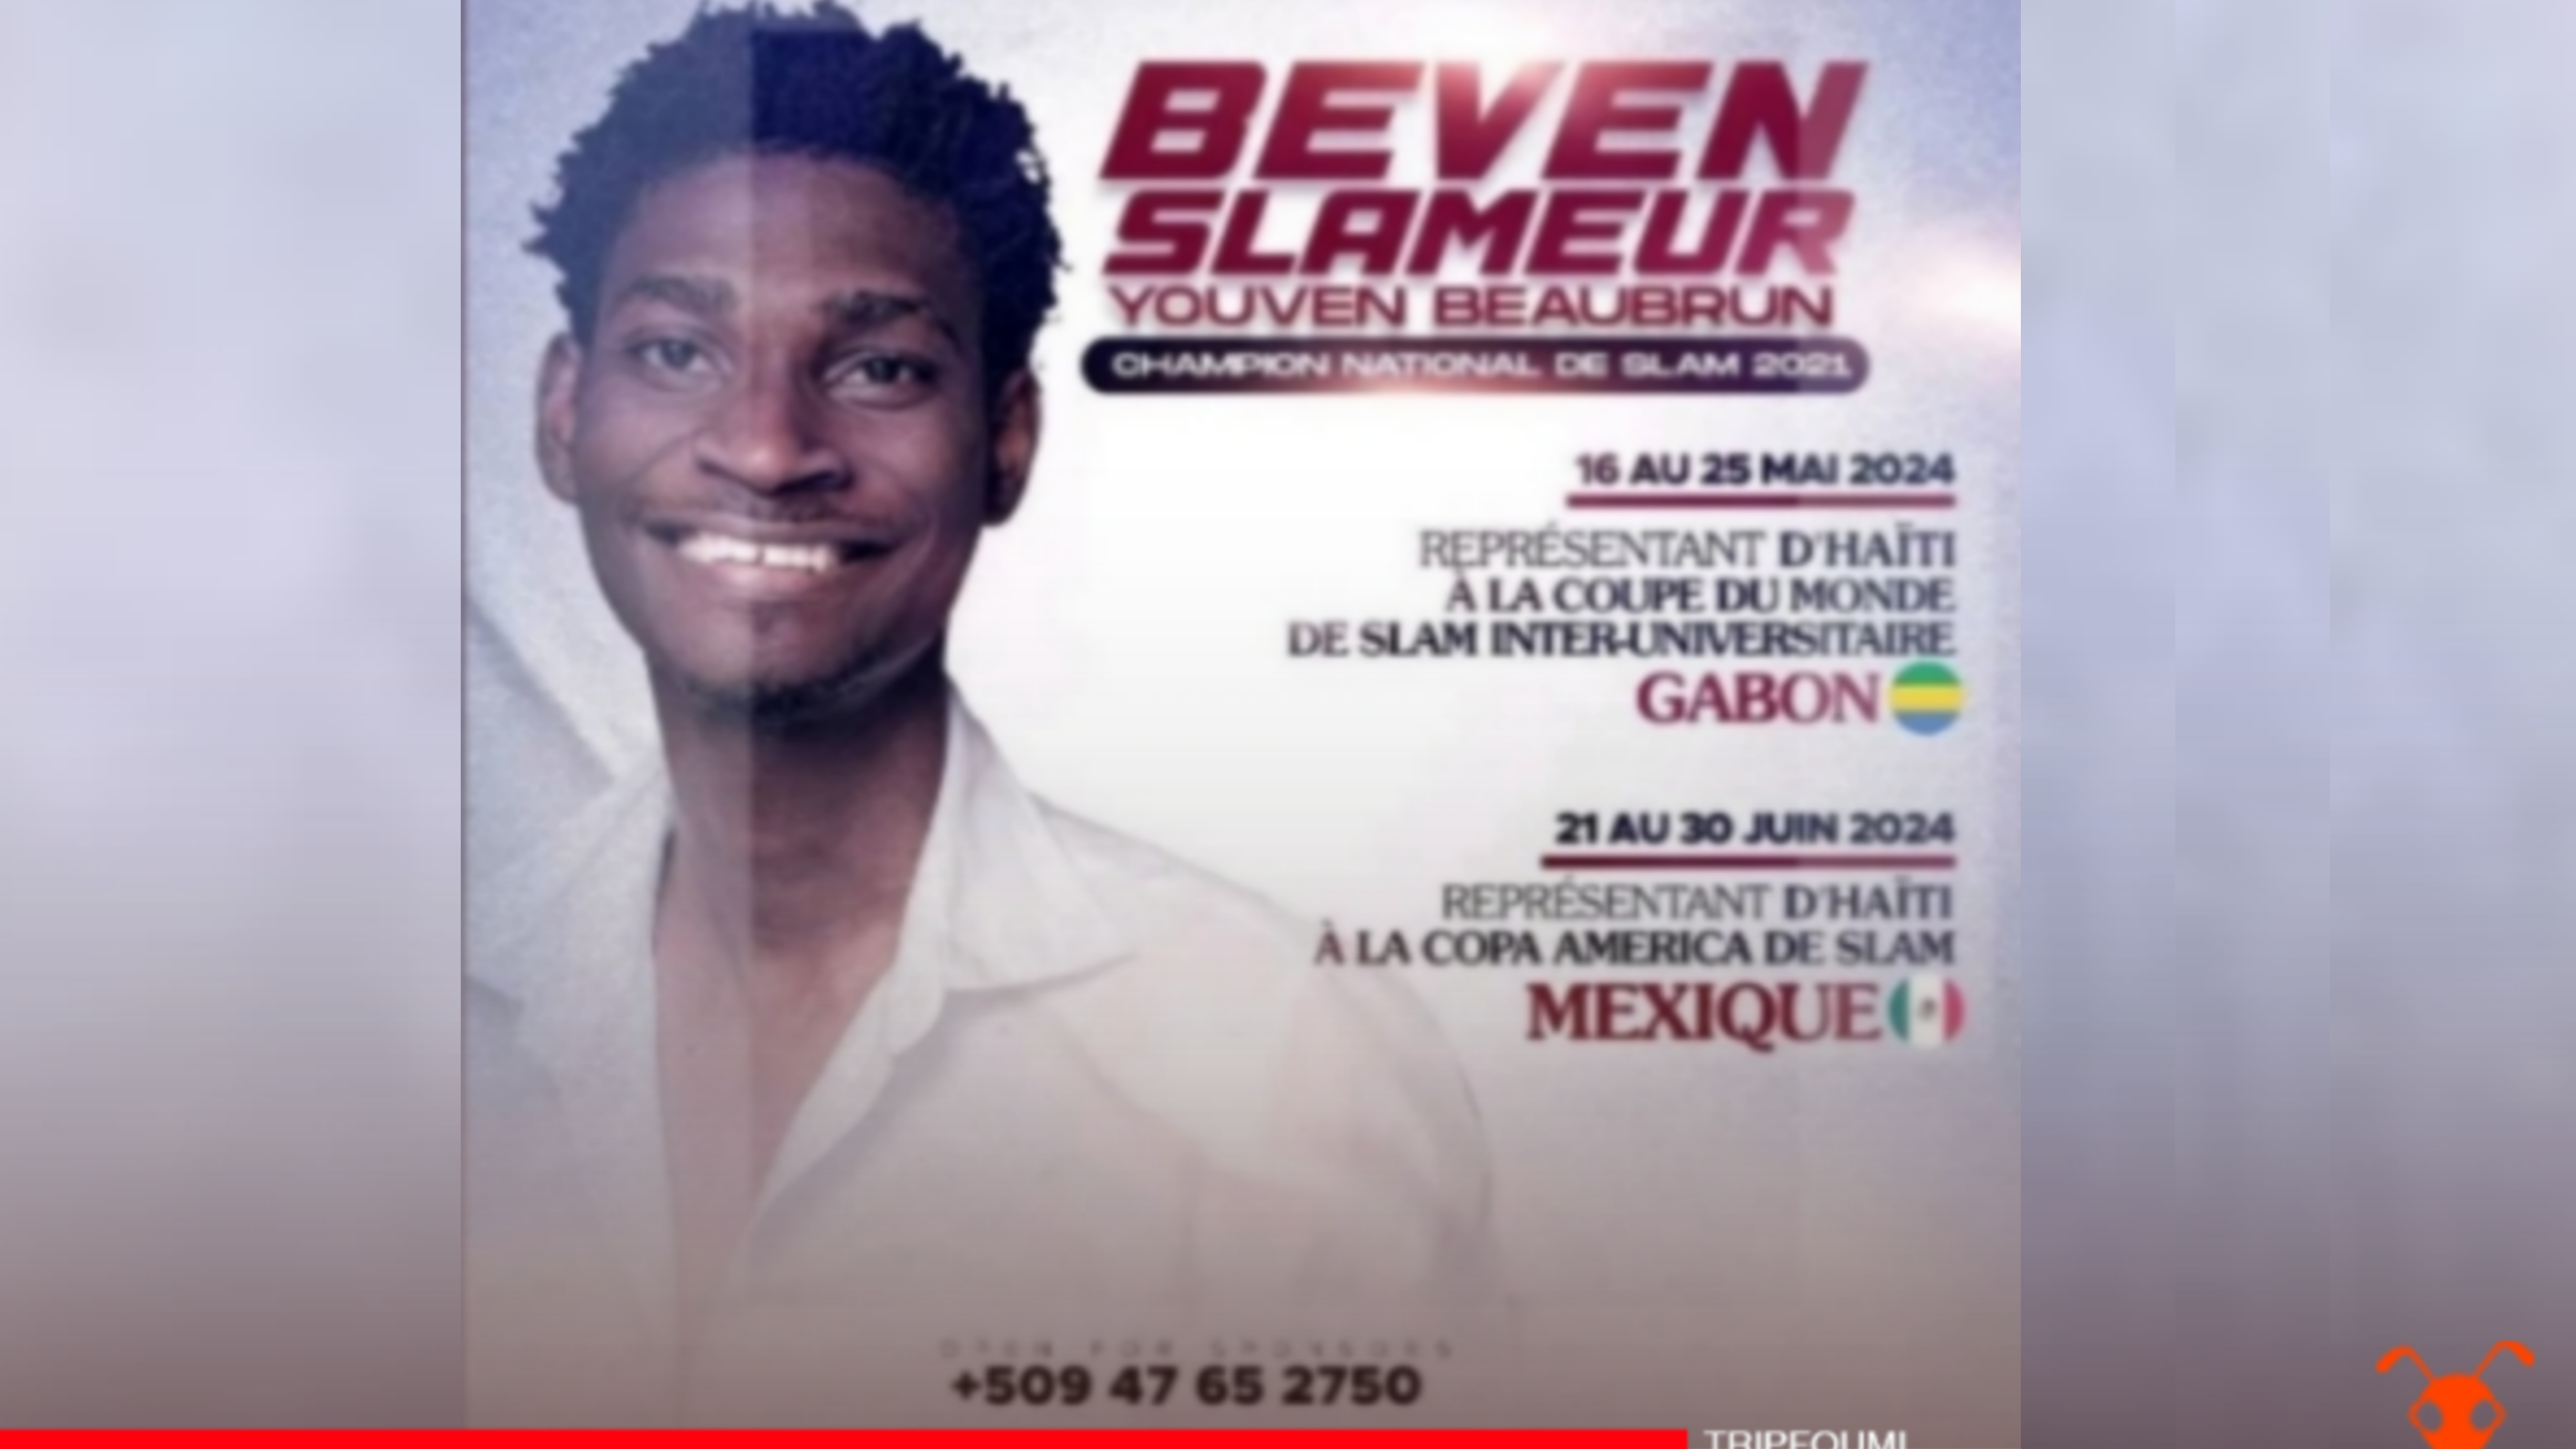 La date de la 11e édition de la Coupe du monde de slam connue, Beven Slameur pour représenter Haïti